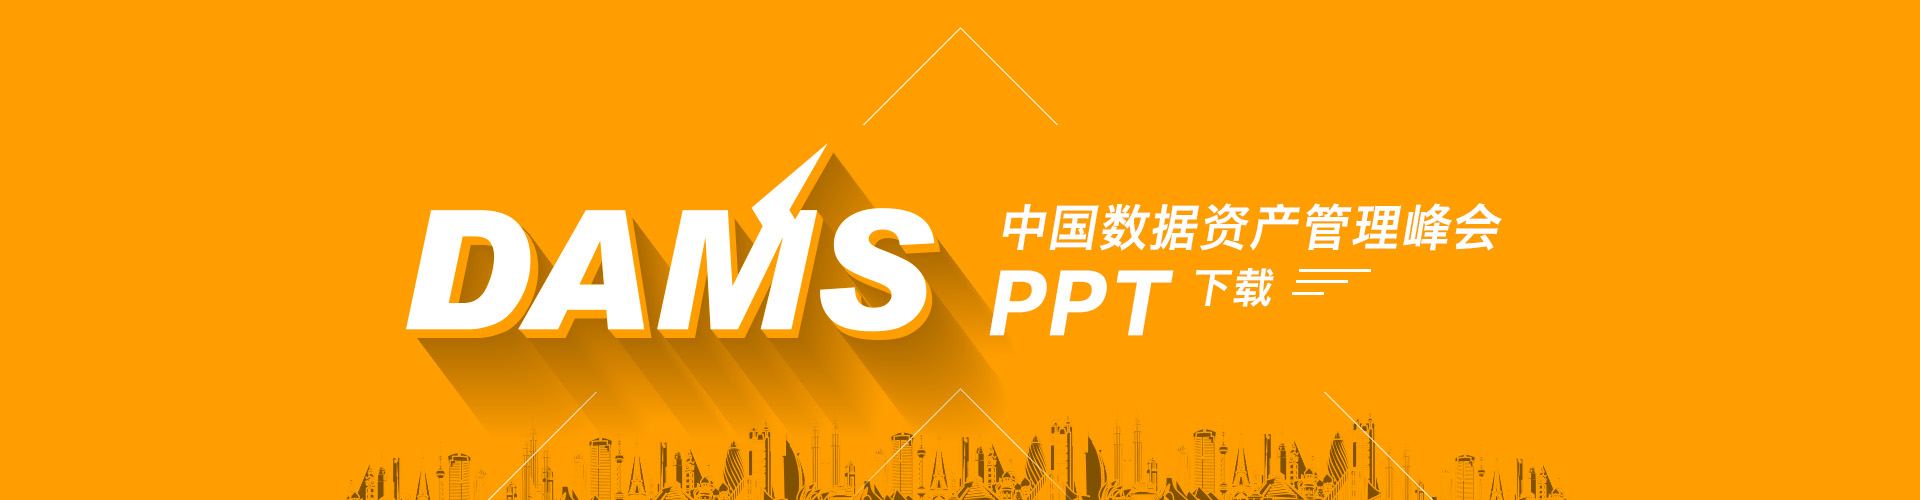 DAMS2015中国数据资产管理峰会精华PPT下载